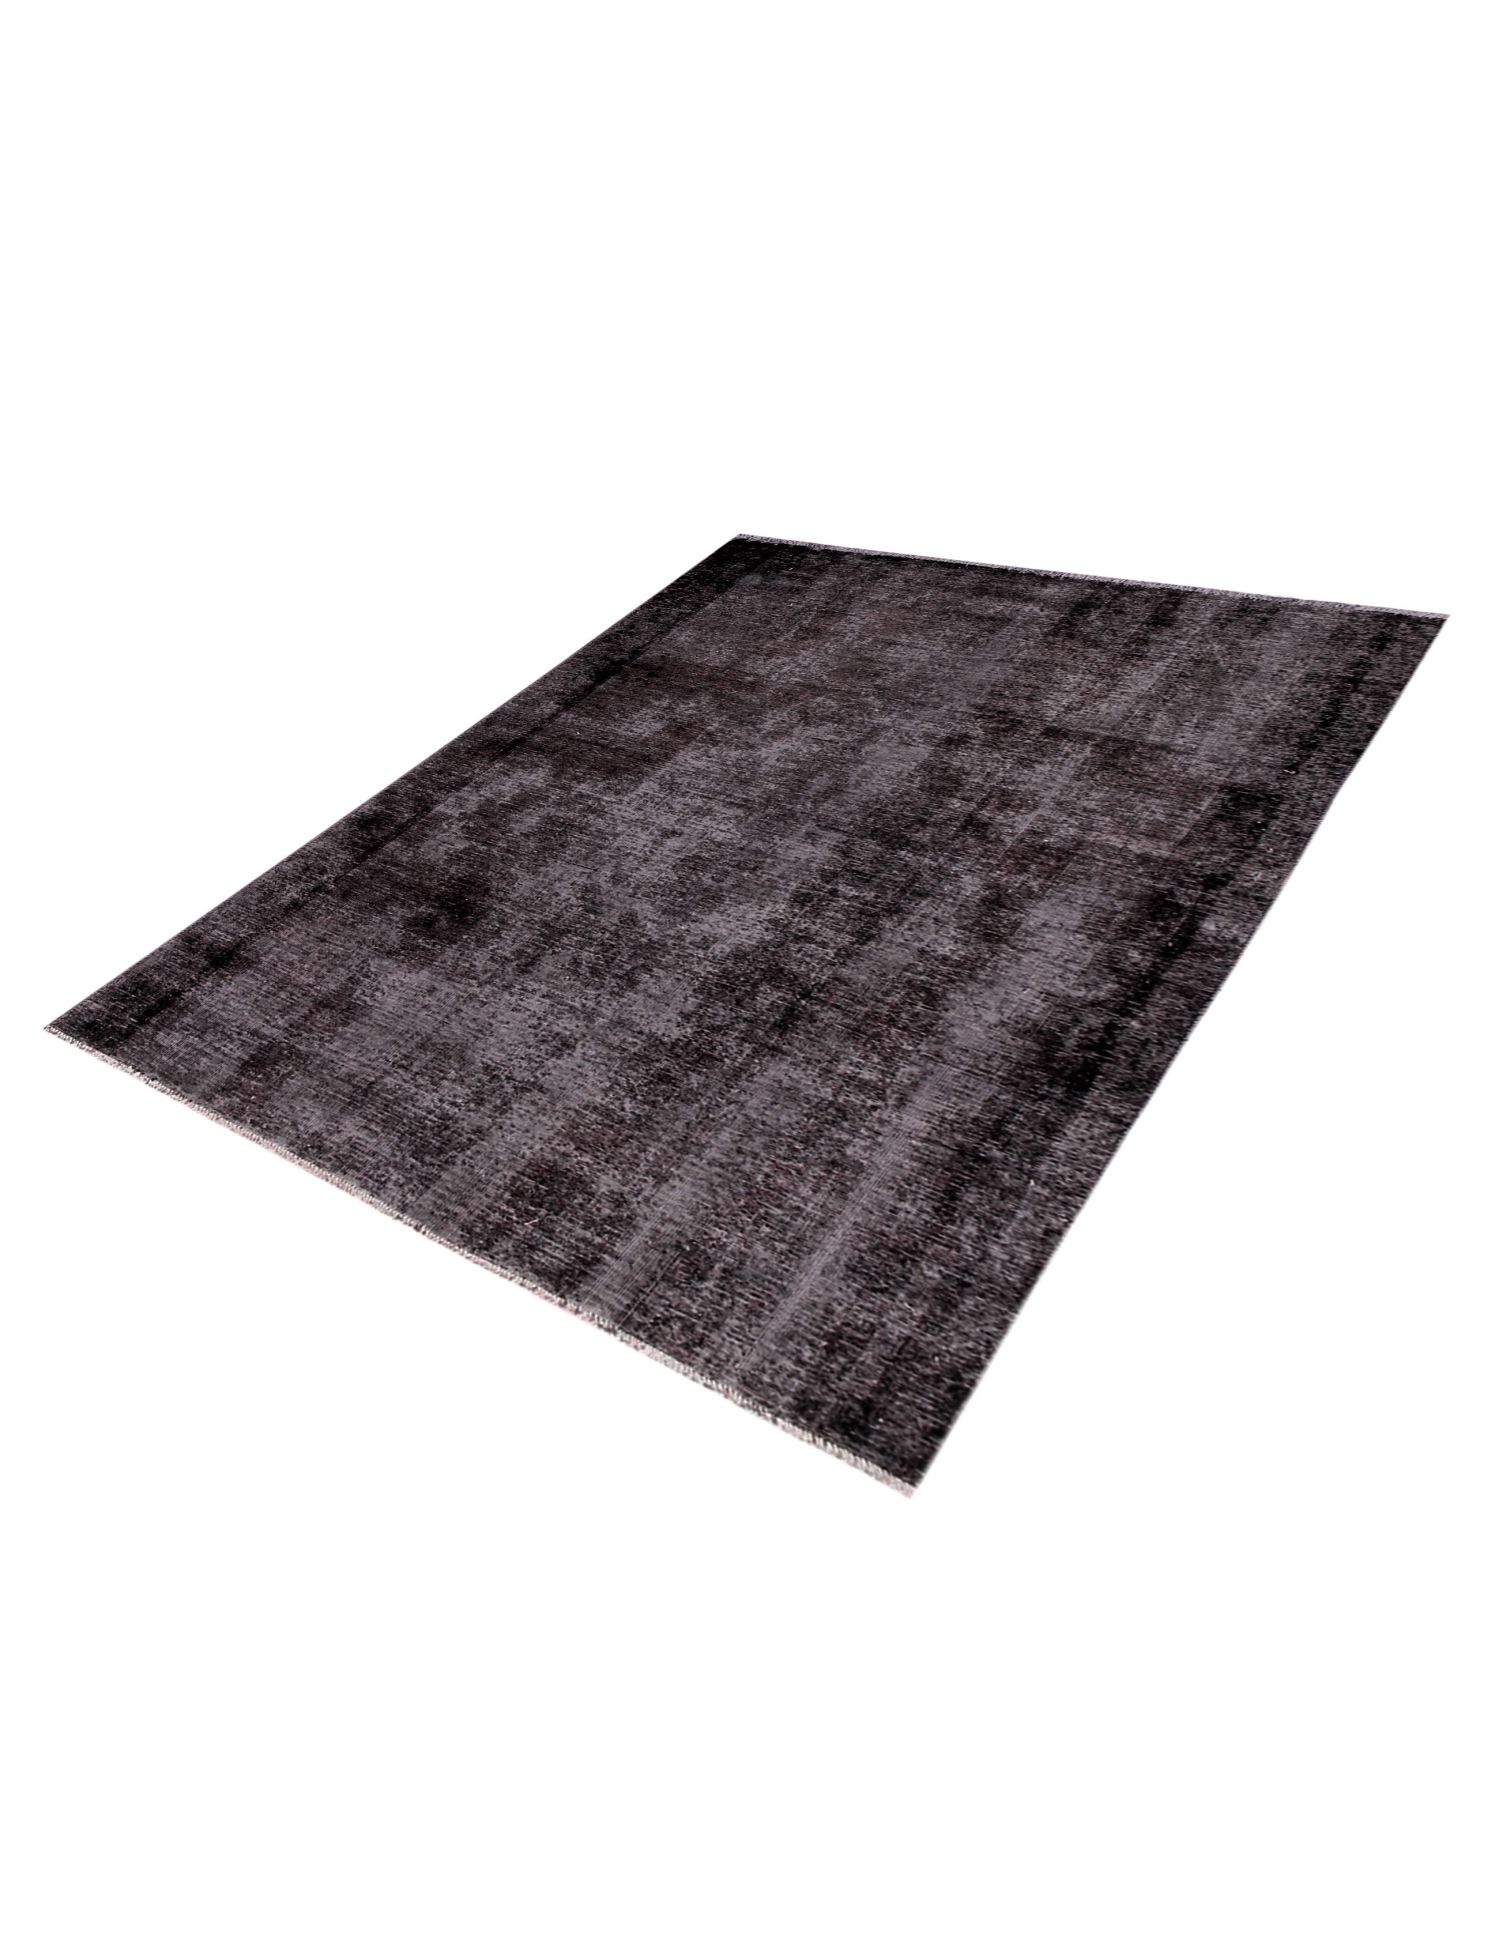 Persian Vintage Carpet  black <br/>250 x 150 cm